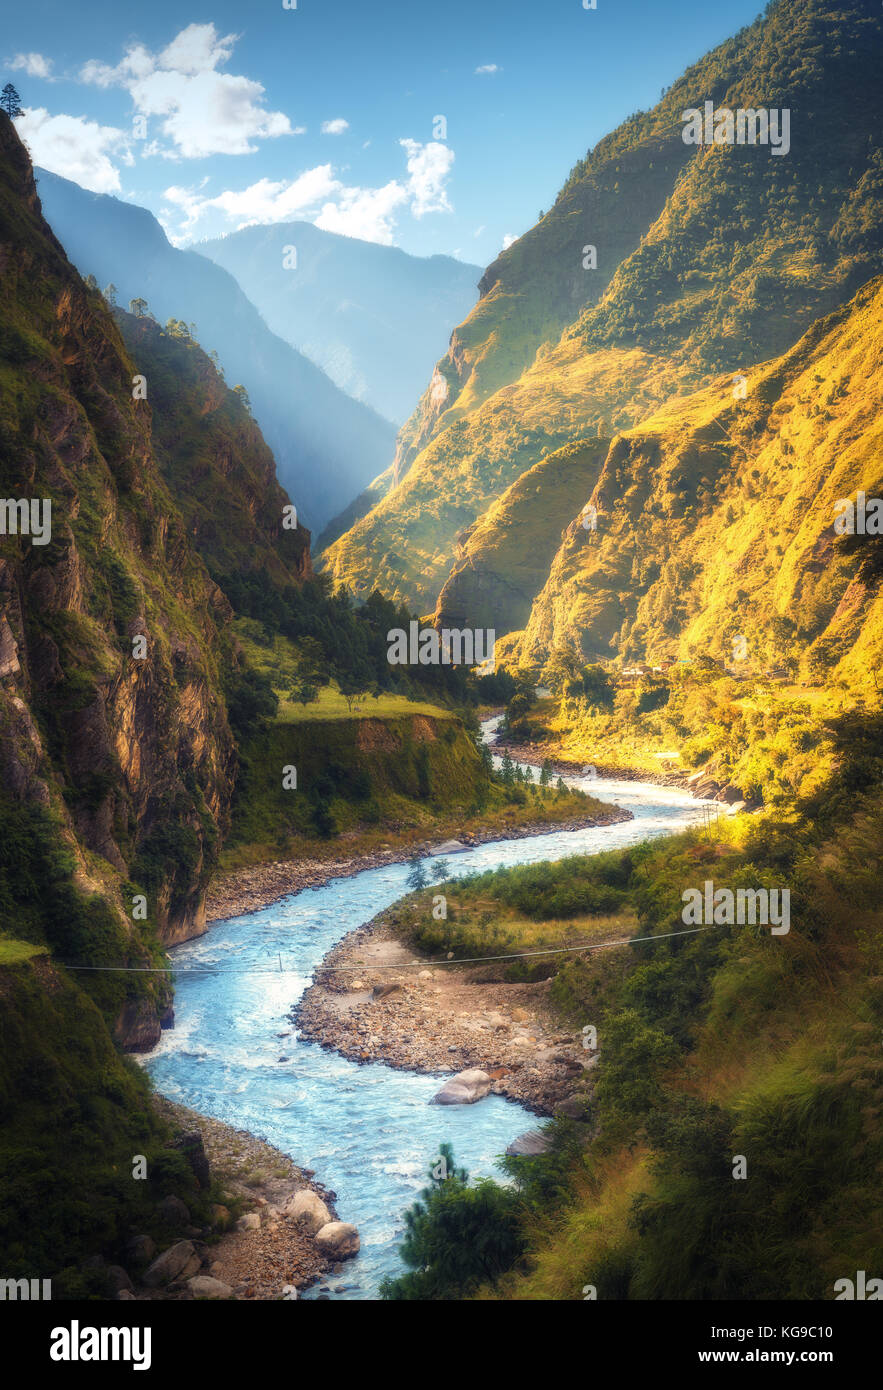 Un paesaggio fantastico con alta montagna himalayana, bellissimo fiume di curvatura, foresta verde, cielo blu con nuvole e sole giallo in autunno in Nepal. m Foto Stock